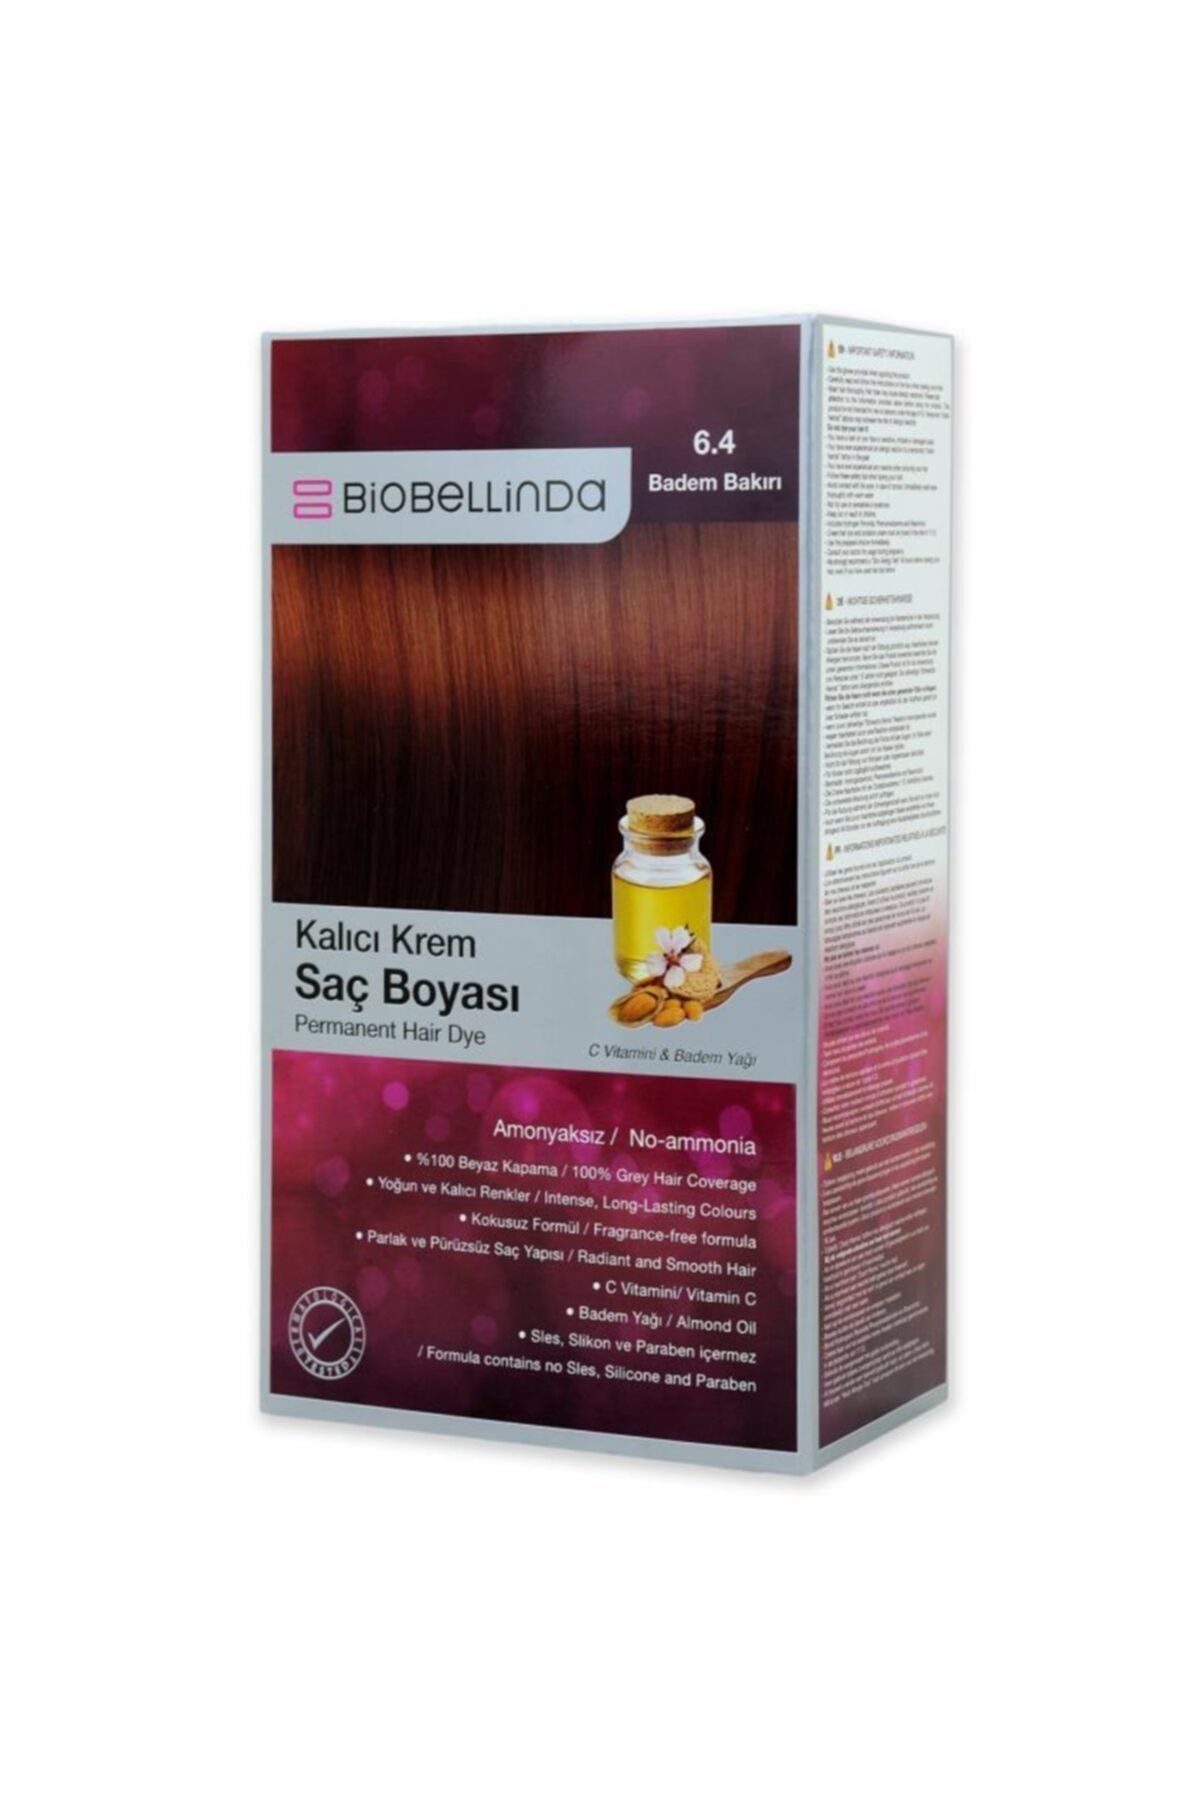 BioBellinda Amonyaksız Ve Kokusuz Kalıcı Krem Saç Boyası - 6.4 Badem Bakırı